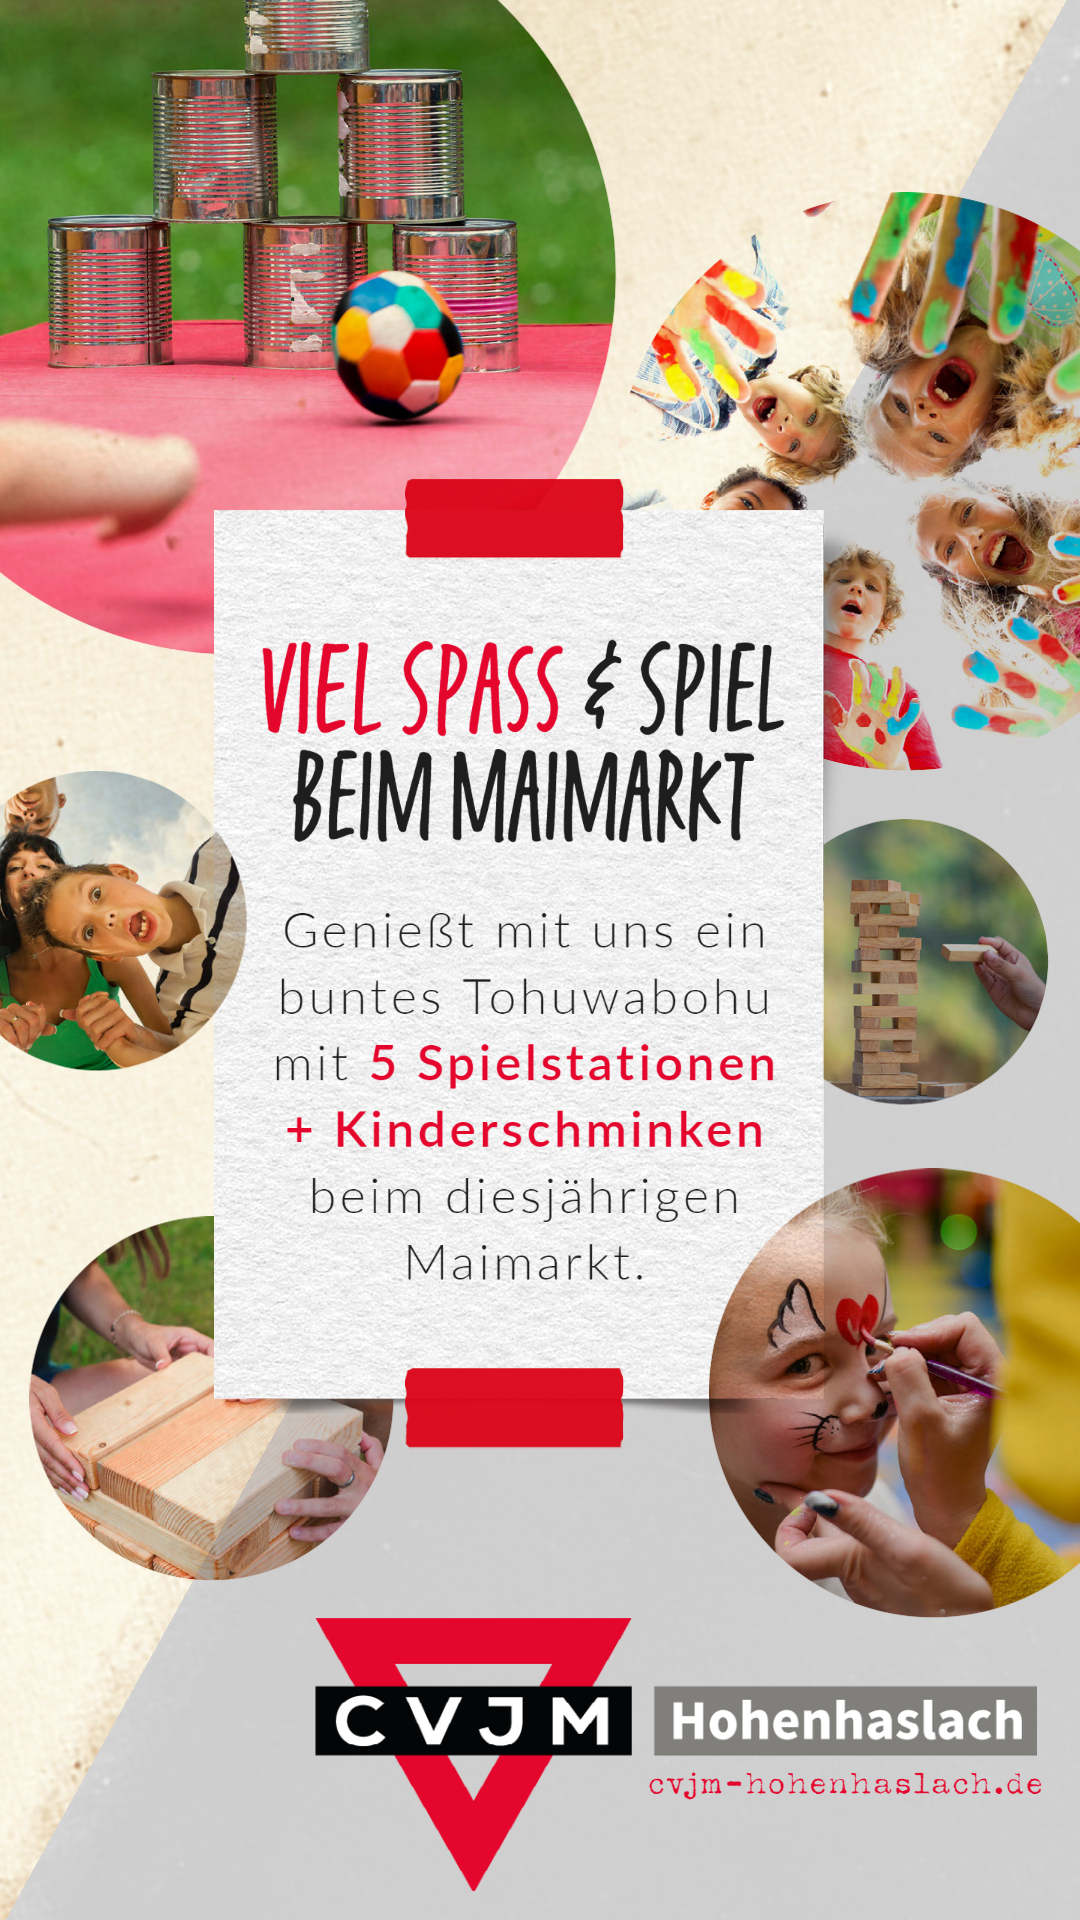 Featured image for “Spiel und Spaß beim Maimarkt”